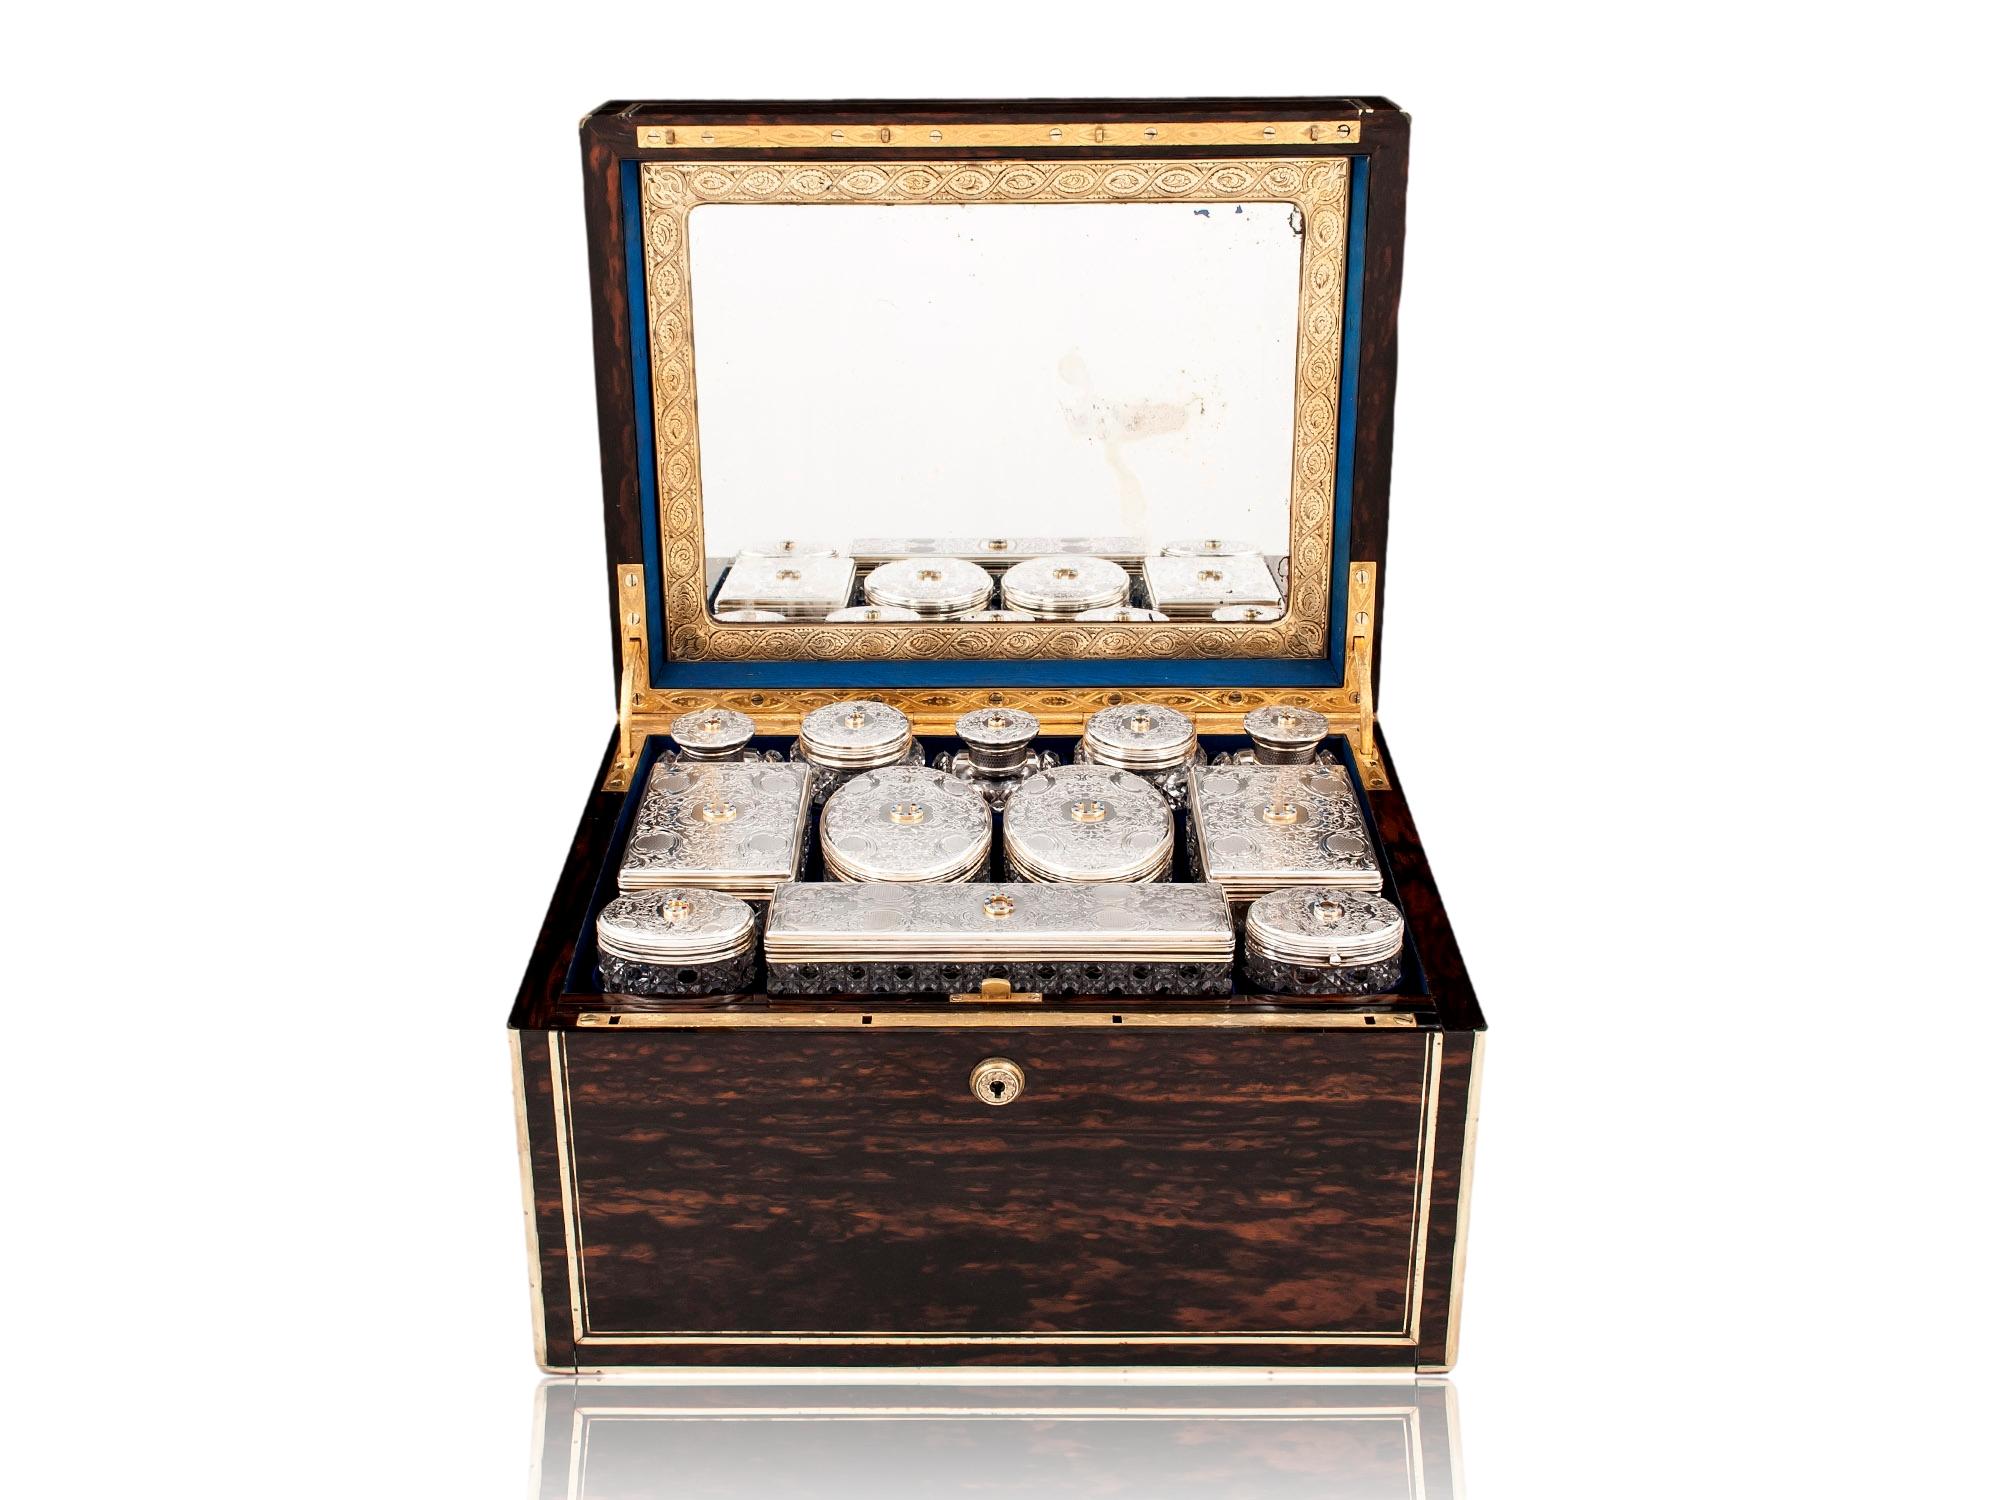 Datiert auf 1857 Punzierungen für James Vickery und Herstellerplakette Henry Lewis

Aus unserer Vanity Box-Kollektion freuen wir uns, diesen außergewöhnlichen viktorianischen Coromandel Vanity Box aus dem Glyn Cywarch Estate anbieten zu können. Die